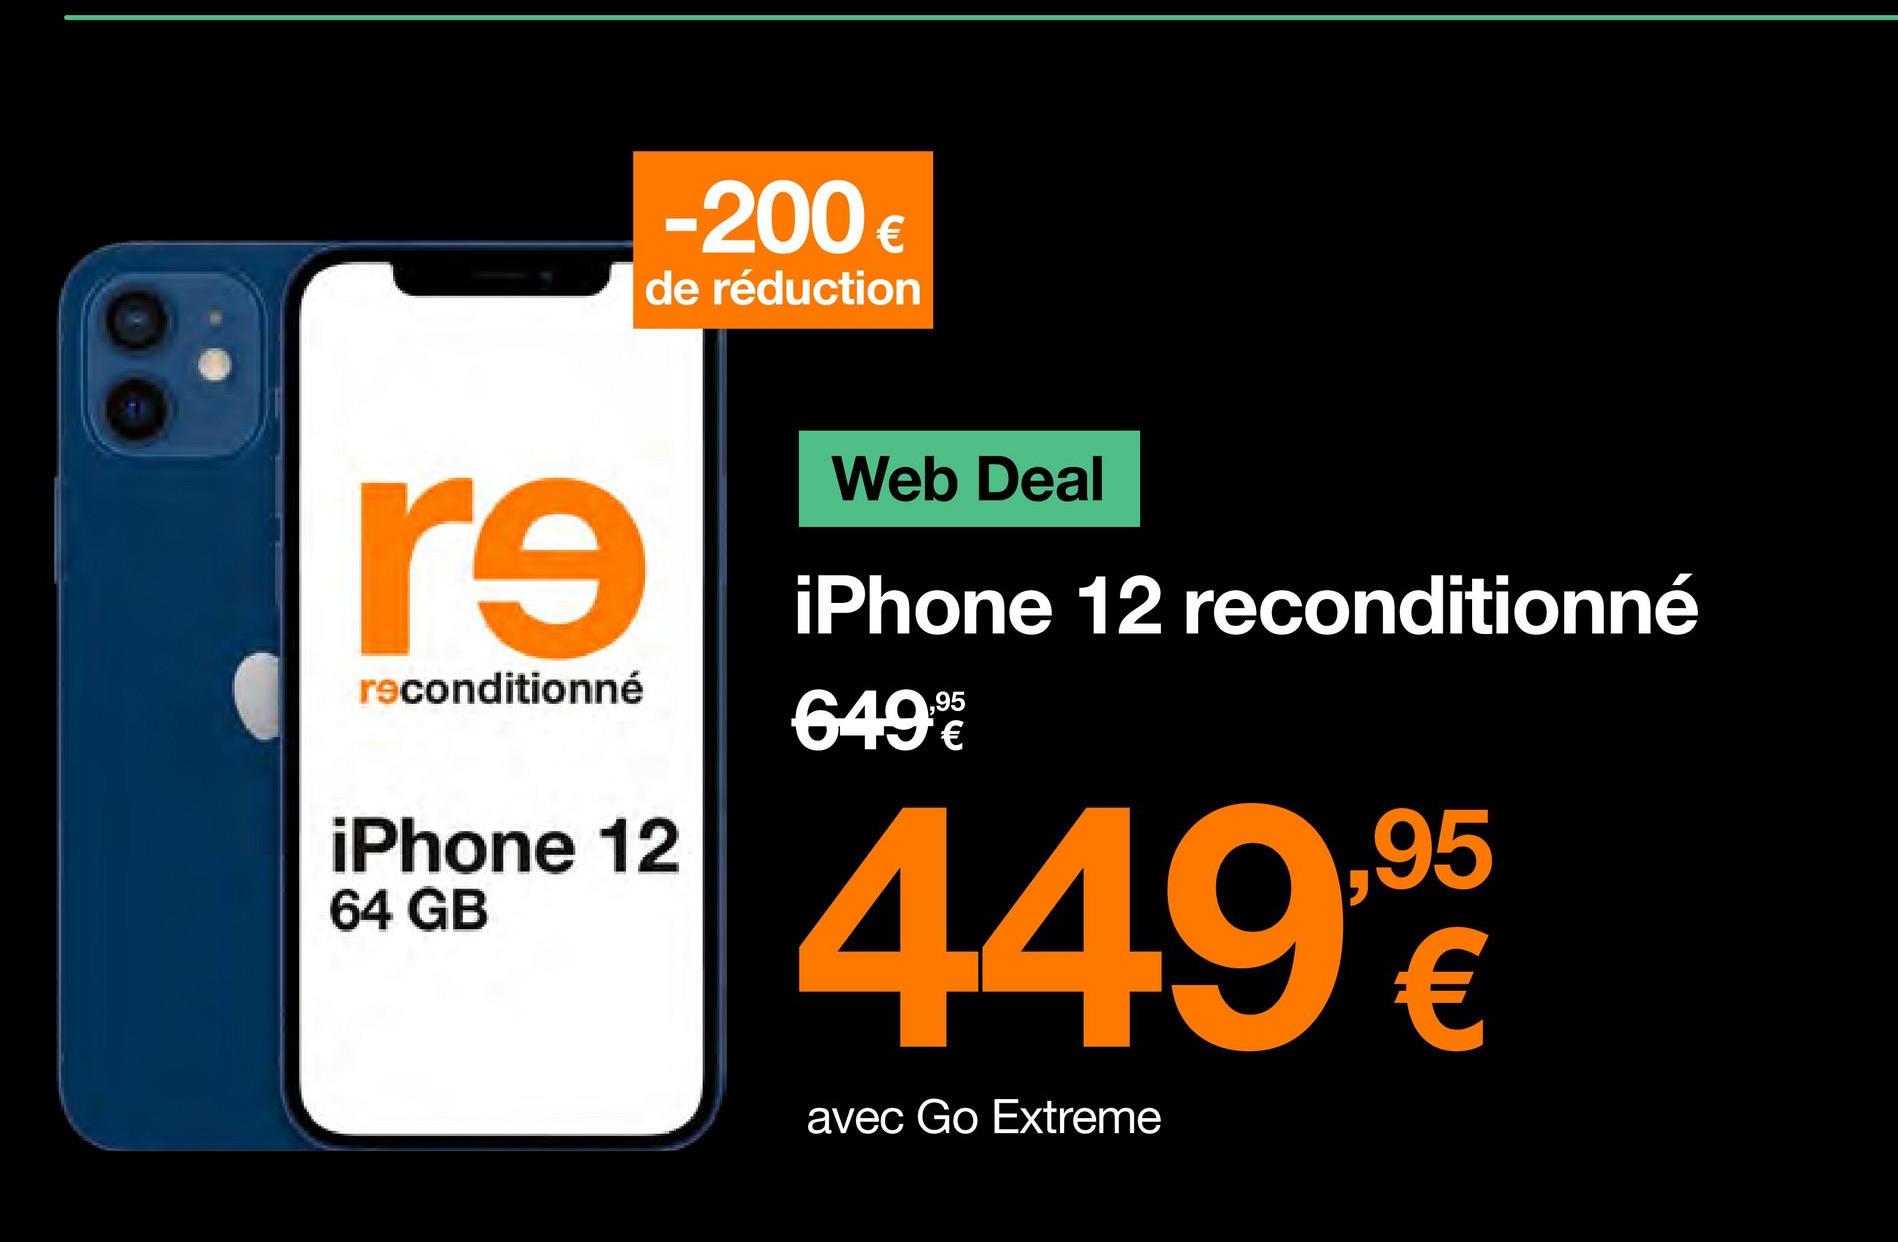 re
reconditionné
-200 €
de réduction
iPhone 12
64 GB
Web Deal
iPhone 12 reconditionné
649
449,90
95
€
avec Go Extreme